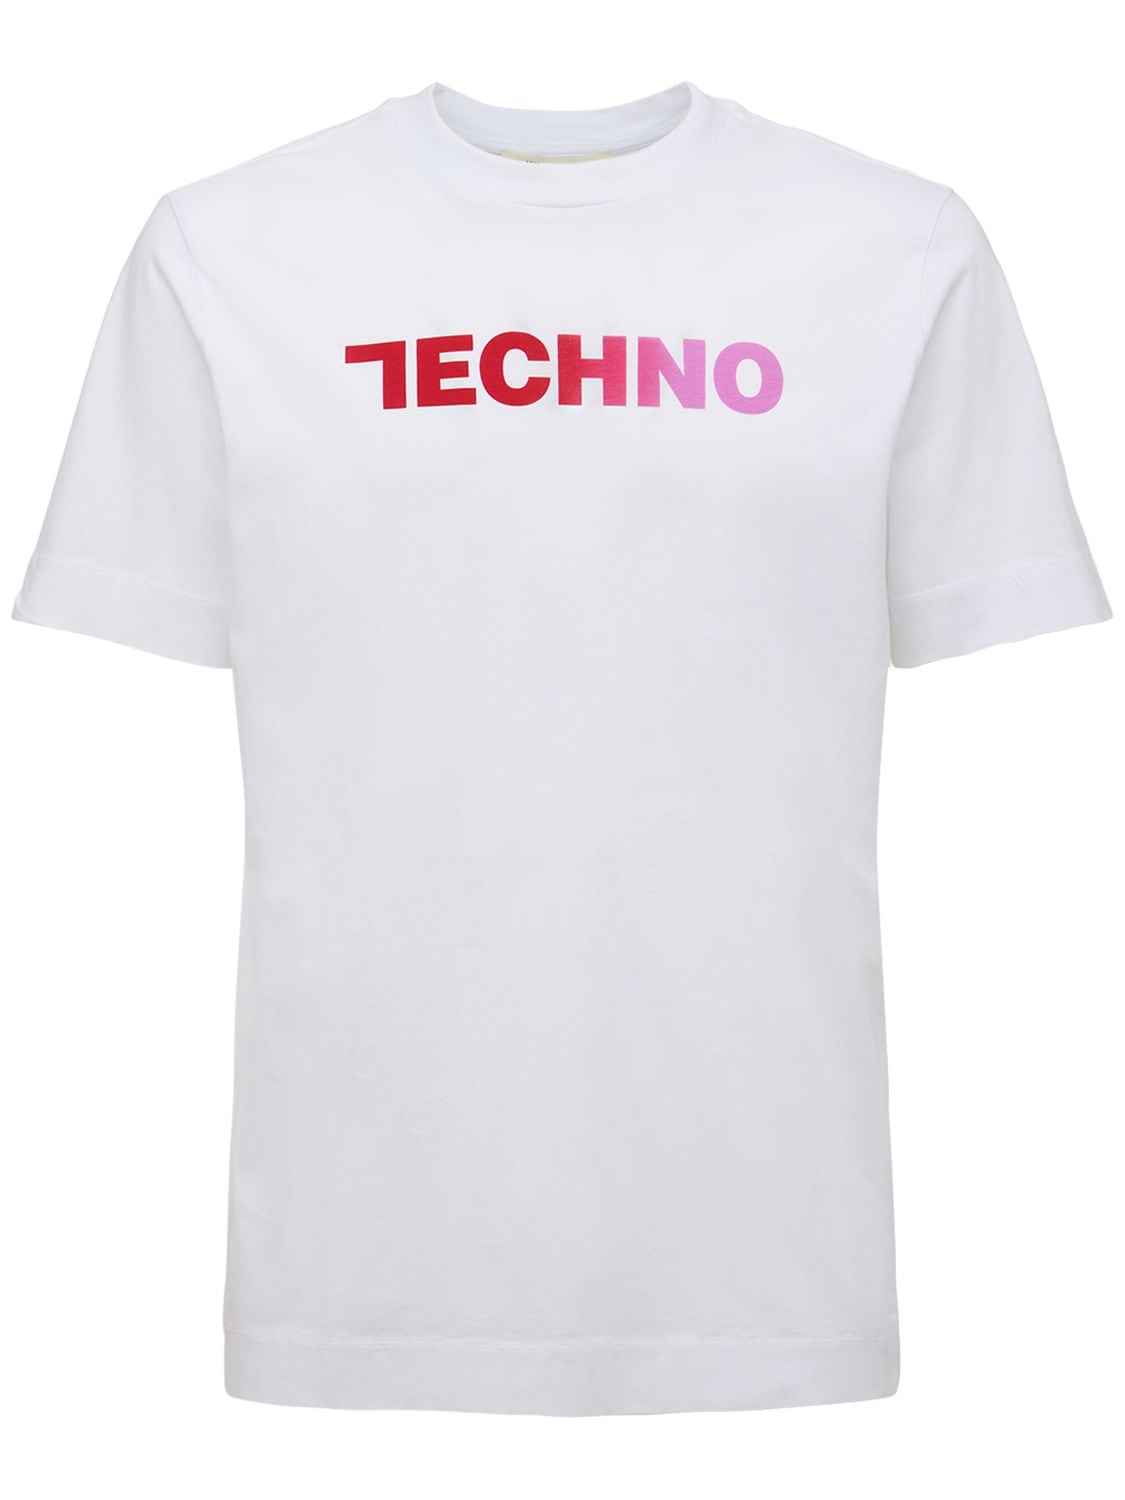 T-shirt En Coton Imprimé Techno